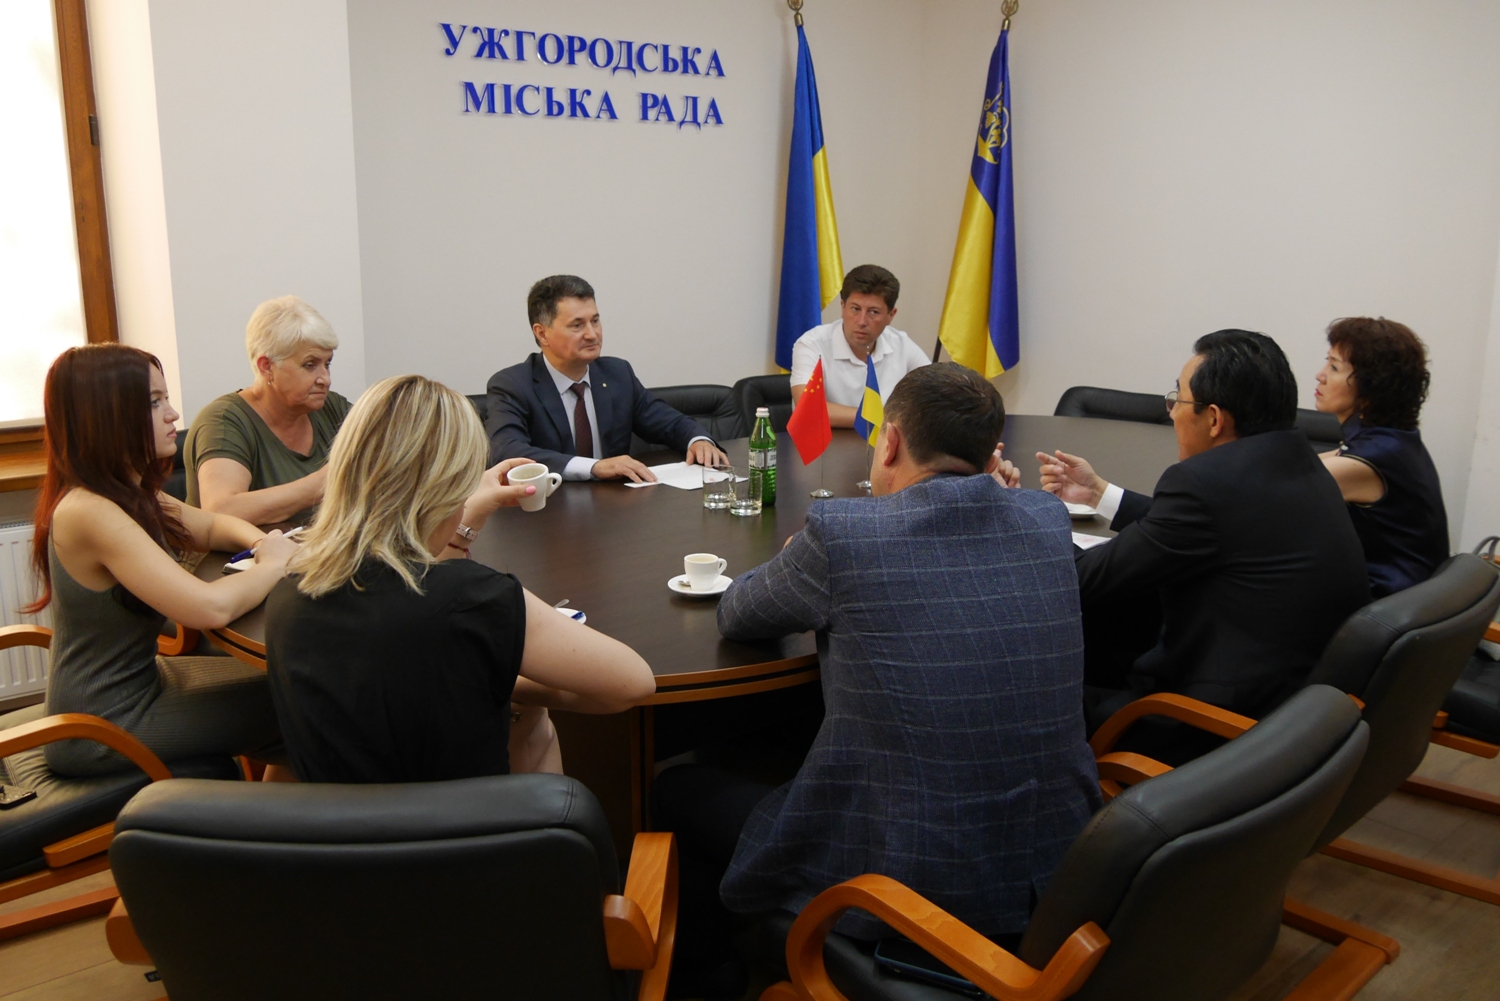 Зустріч із представниками Посольства Китайської Народної Республіки в Україні провели сьогодні в Ужгородської міської ради